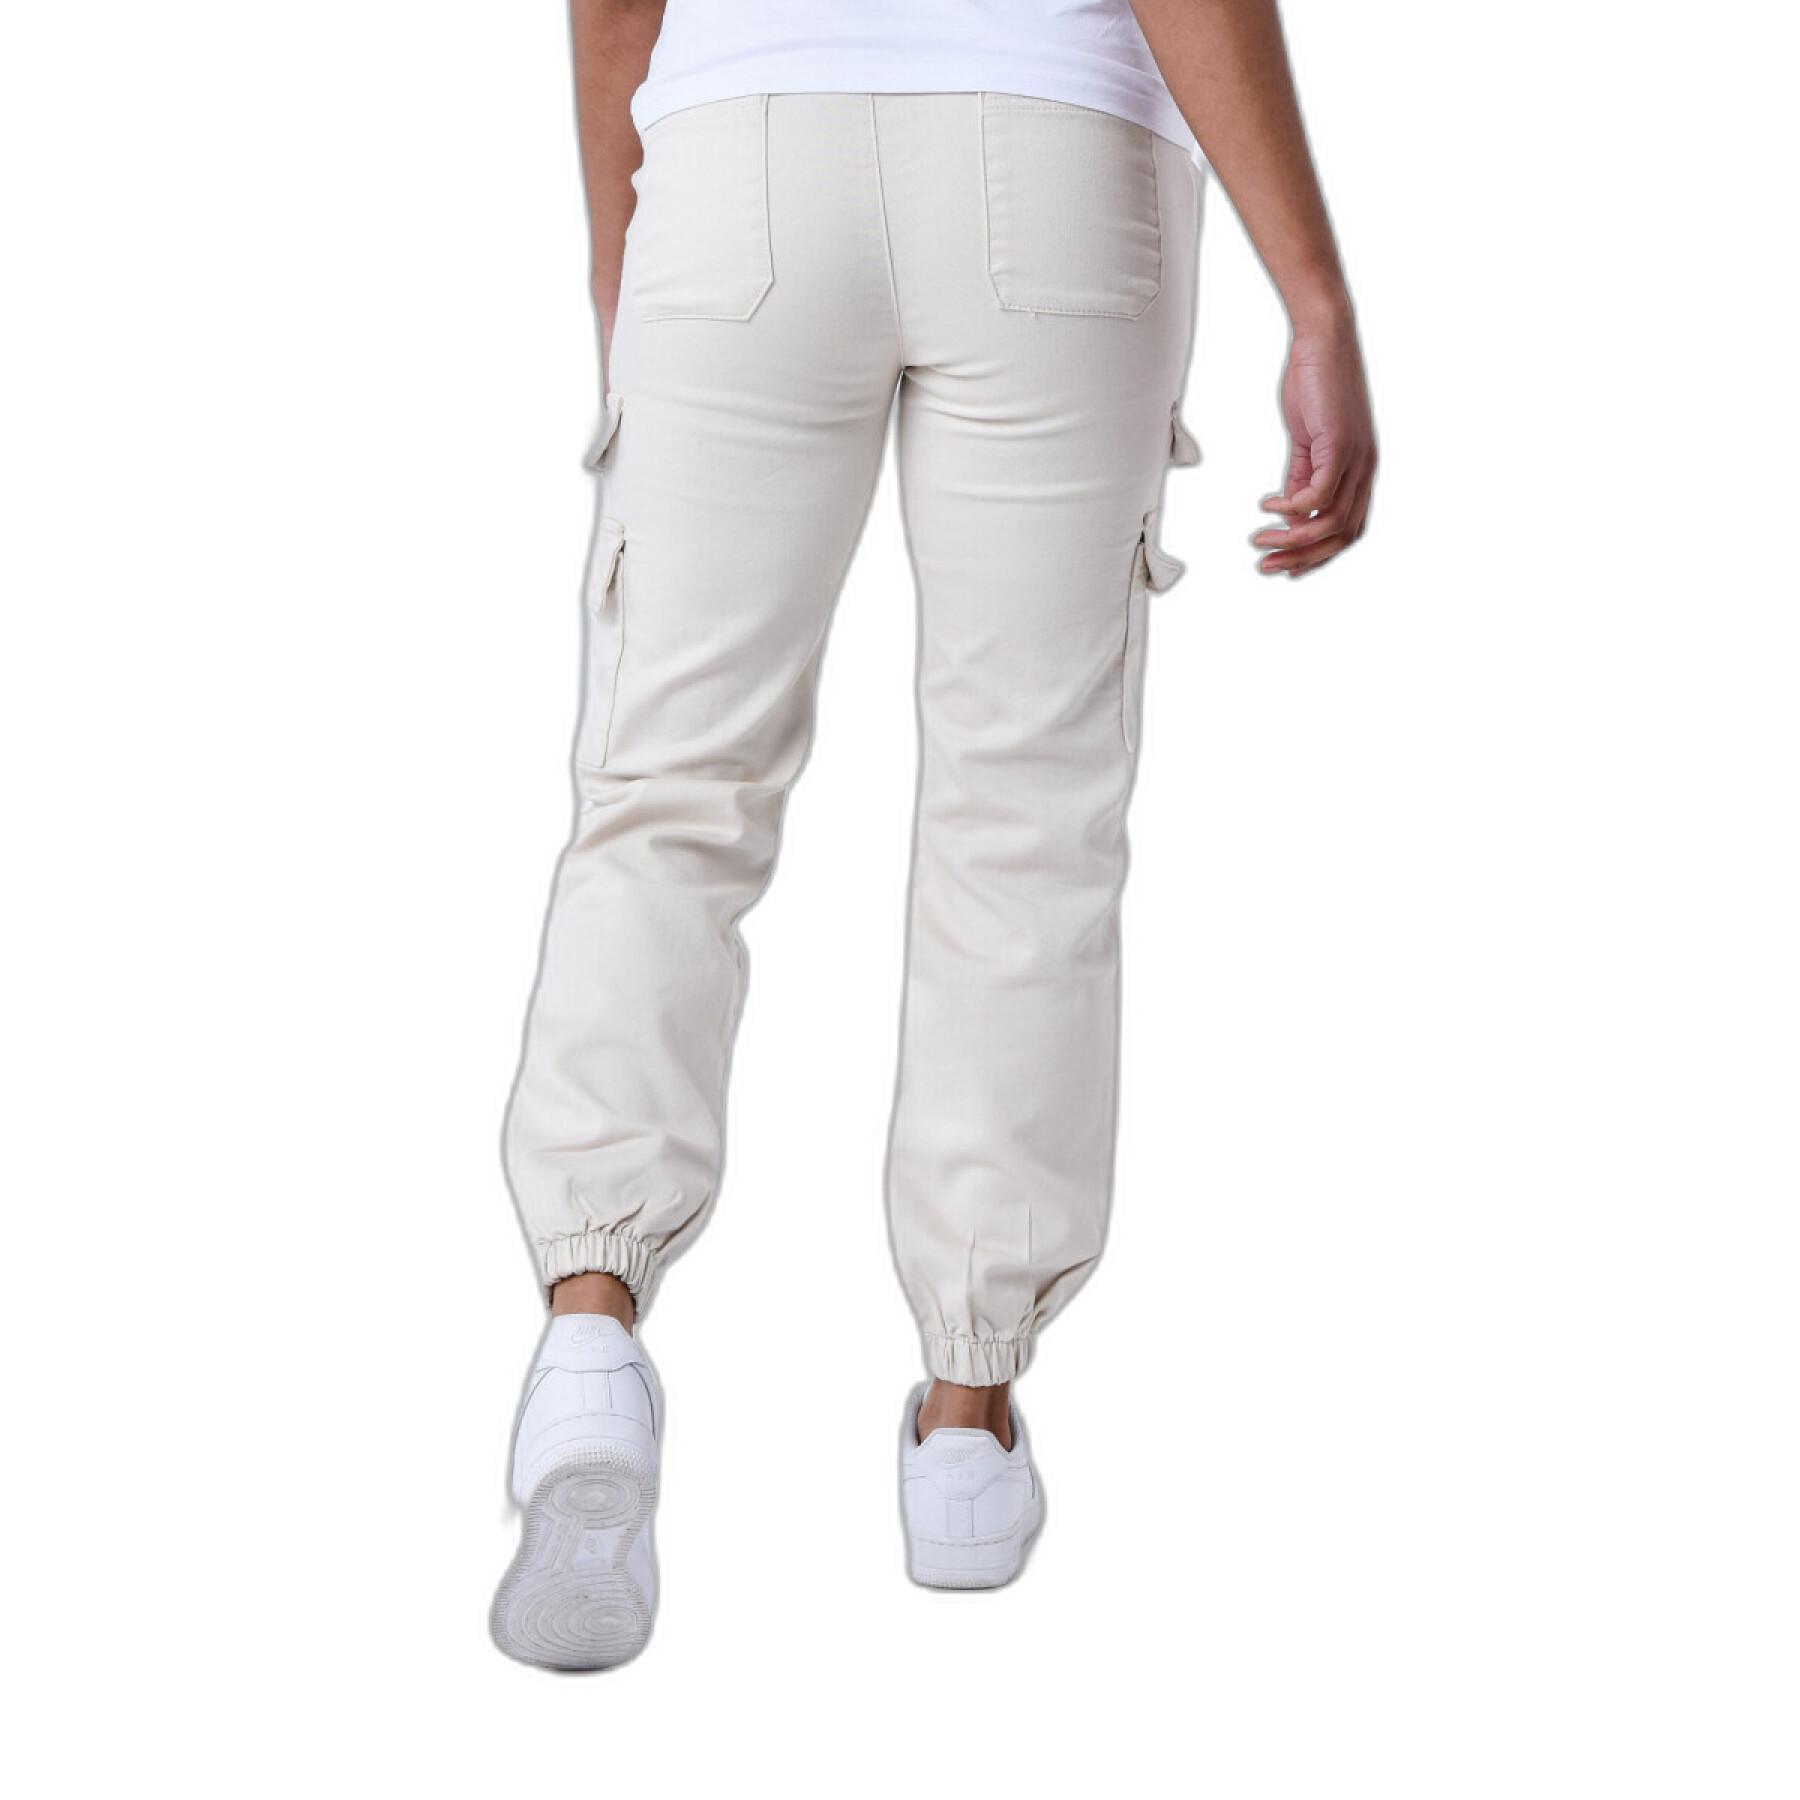 Pantaloni cargo poches multiples femme Project X Paris